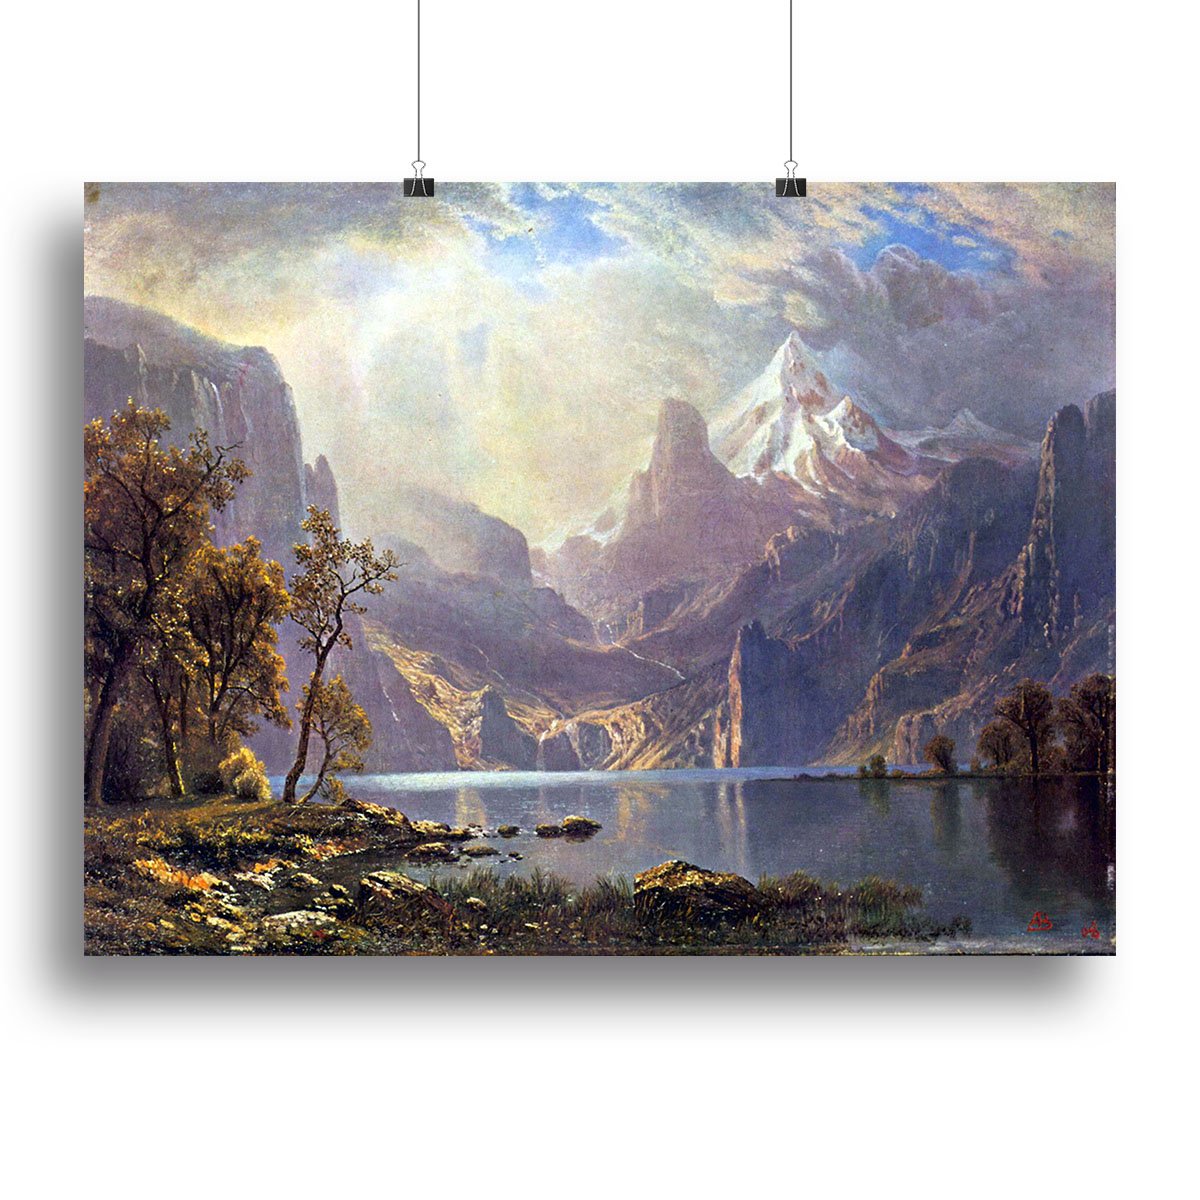 Lake Tahoe by Bierstadt Canvas Print or Poster